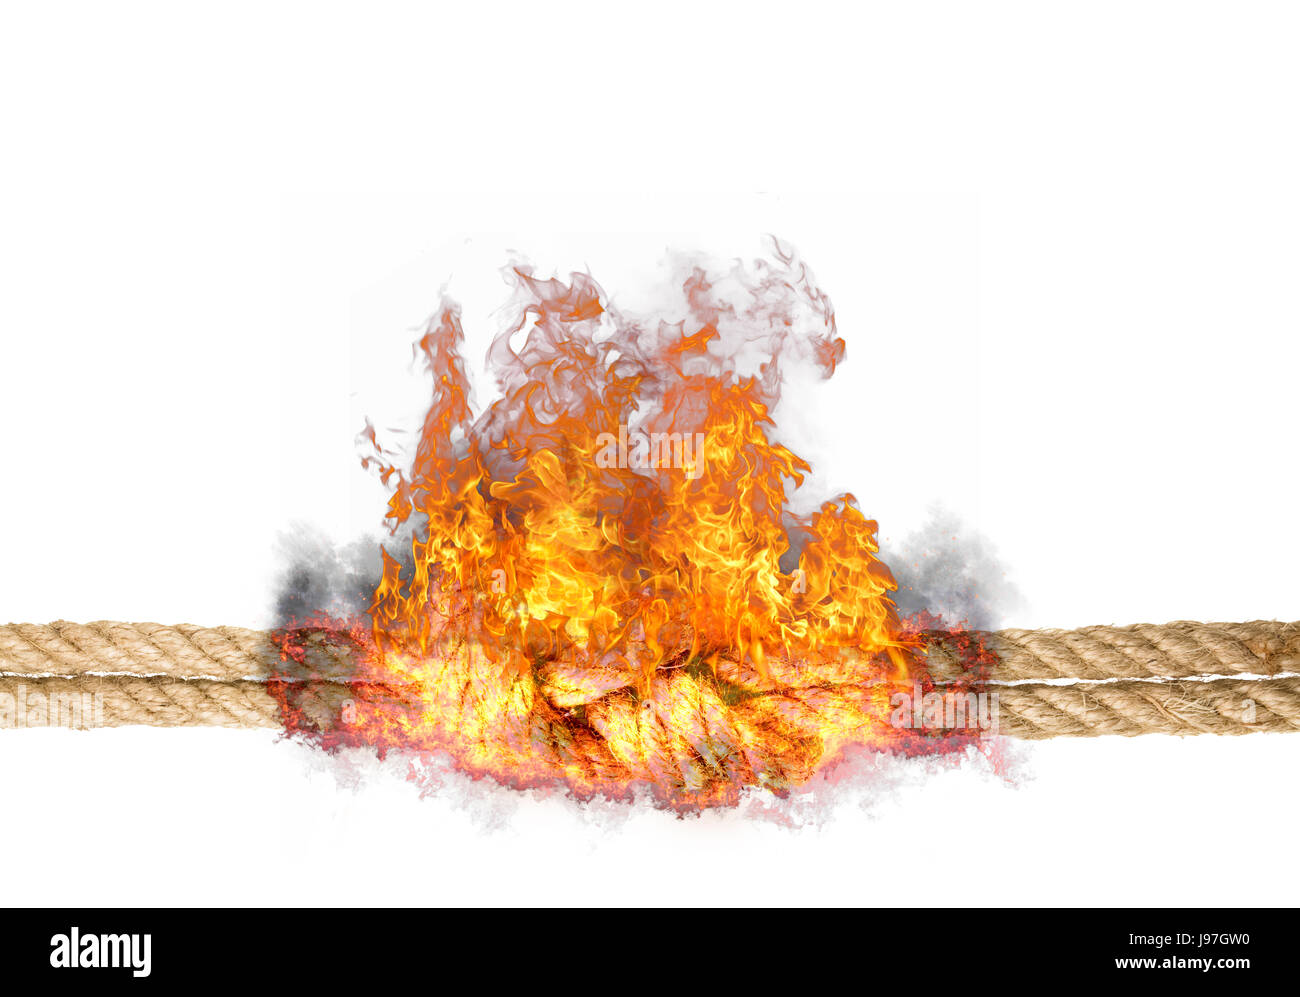 Corde solide avec un noeud, bursted dans des flammes, isolé contre l'arrière-plan de couleur blanche Banque D'Images